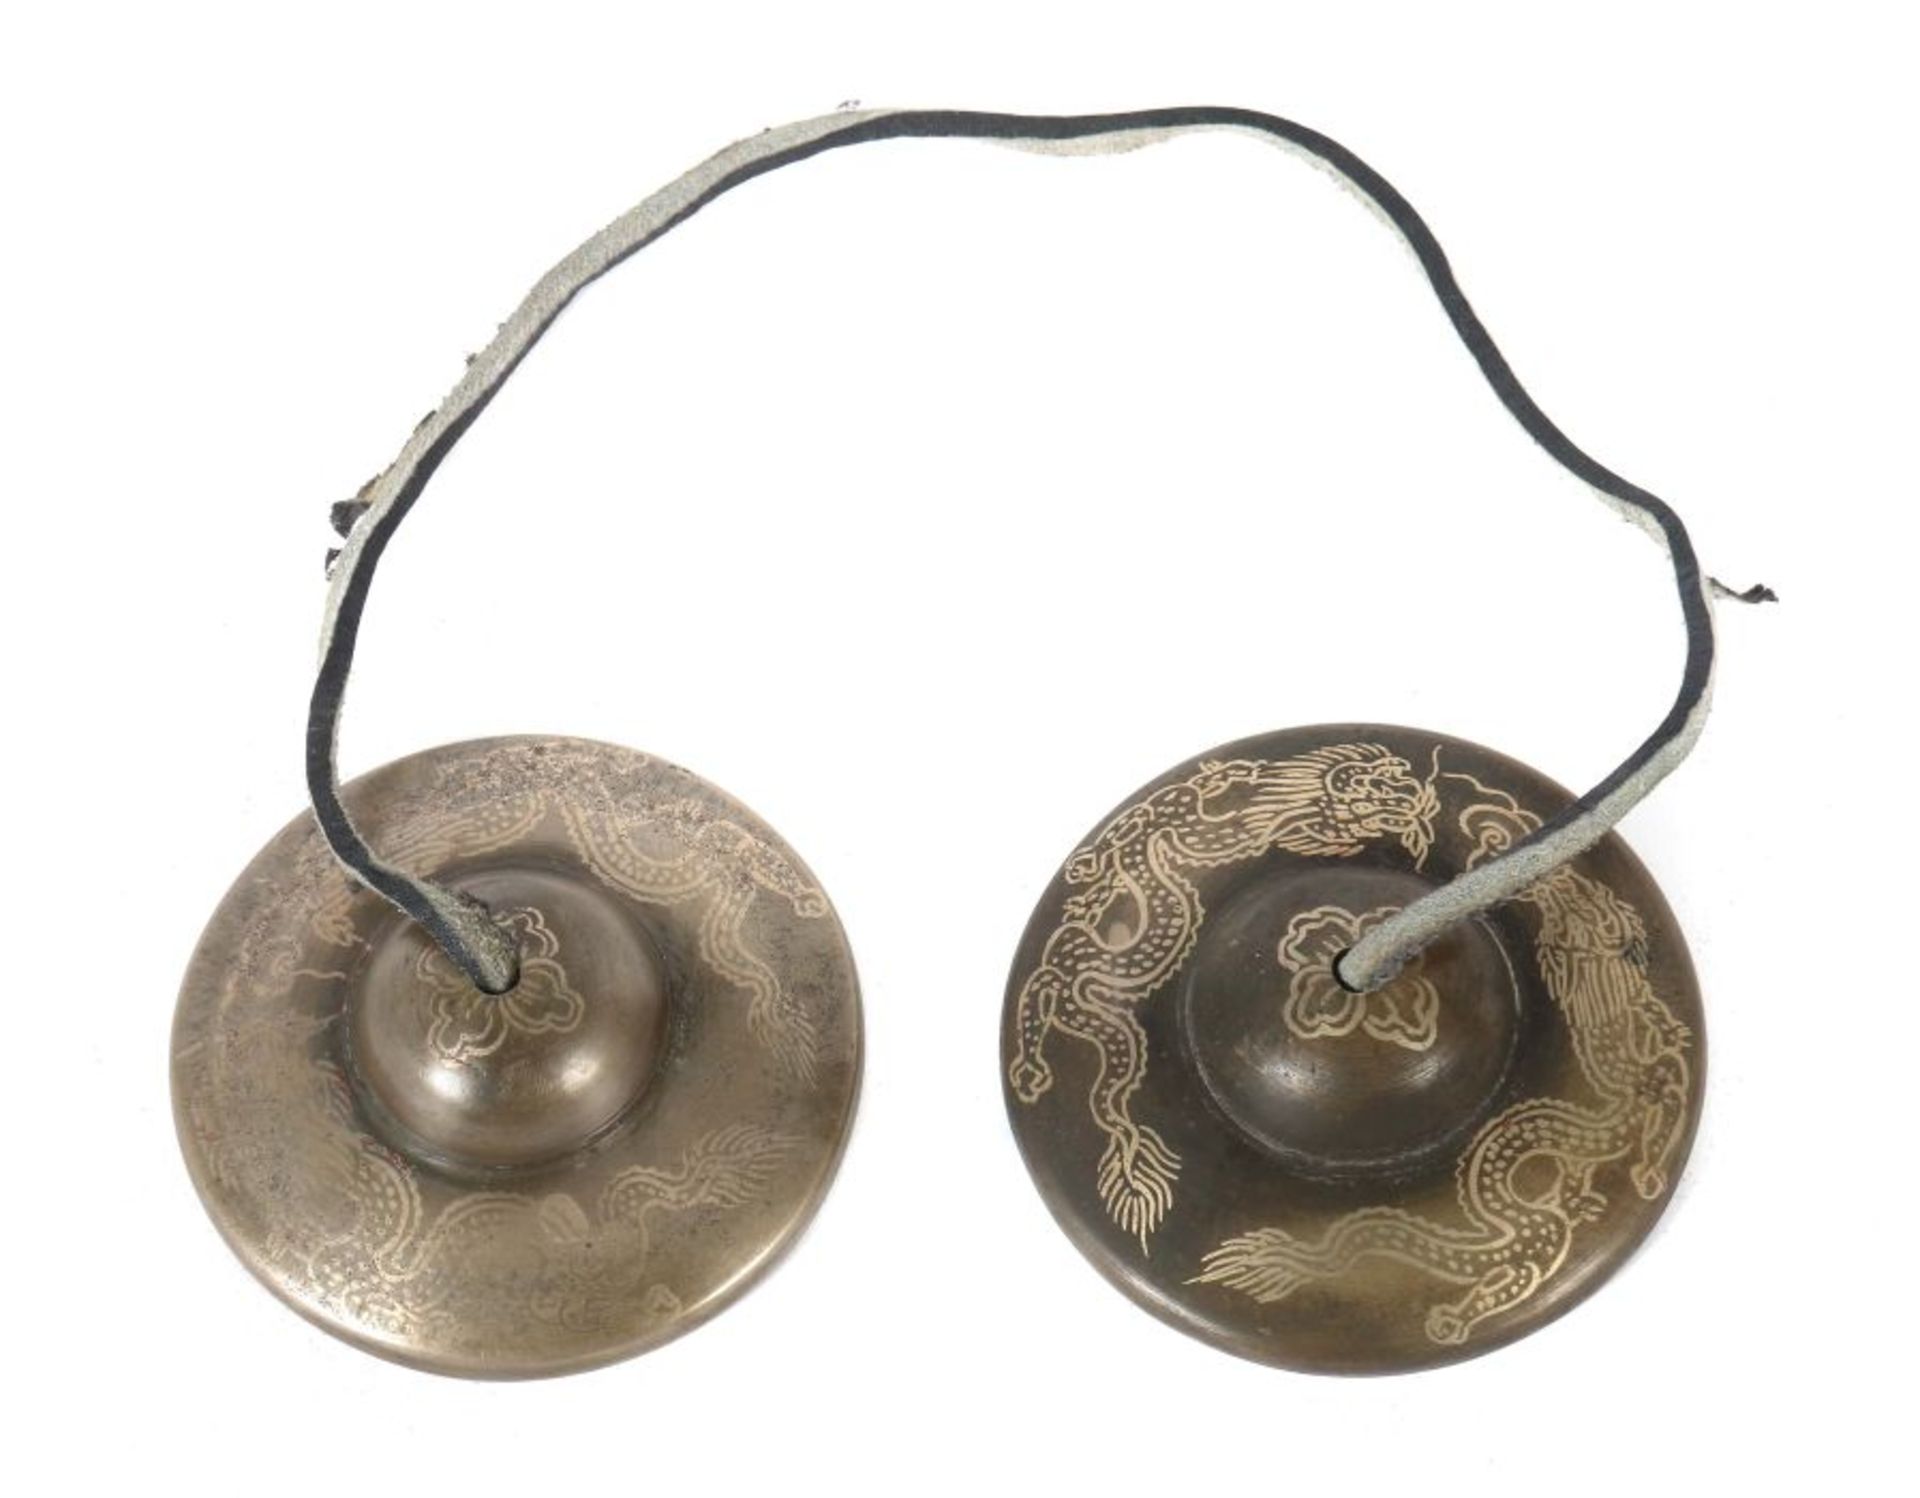 Klangschalen Nepal/Tibet, Anfang 20. Jh., Metall, mit Dekor zweier fliegender Drachen, an